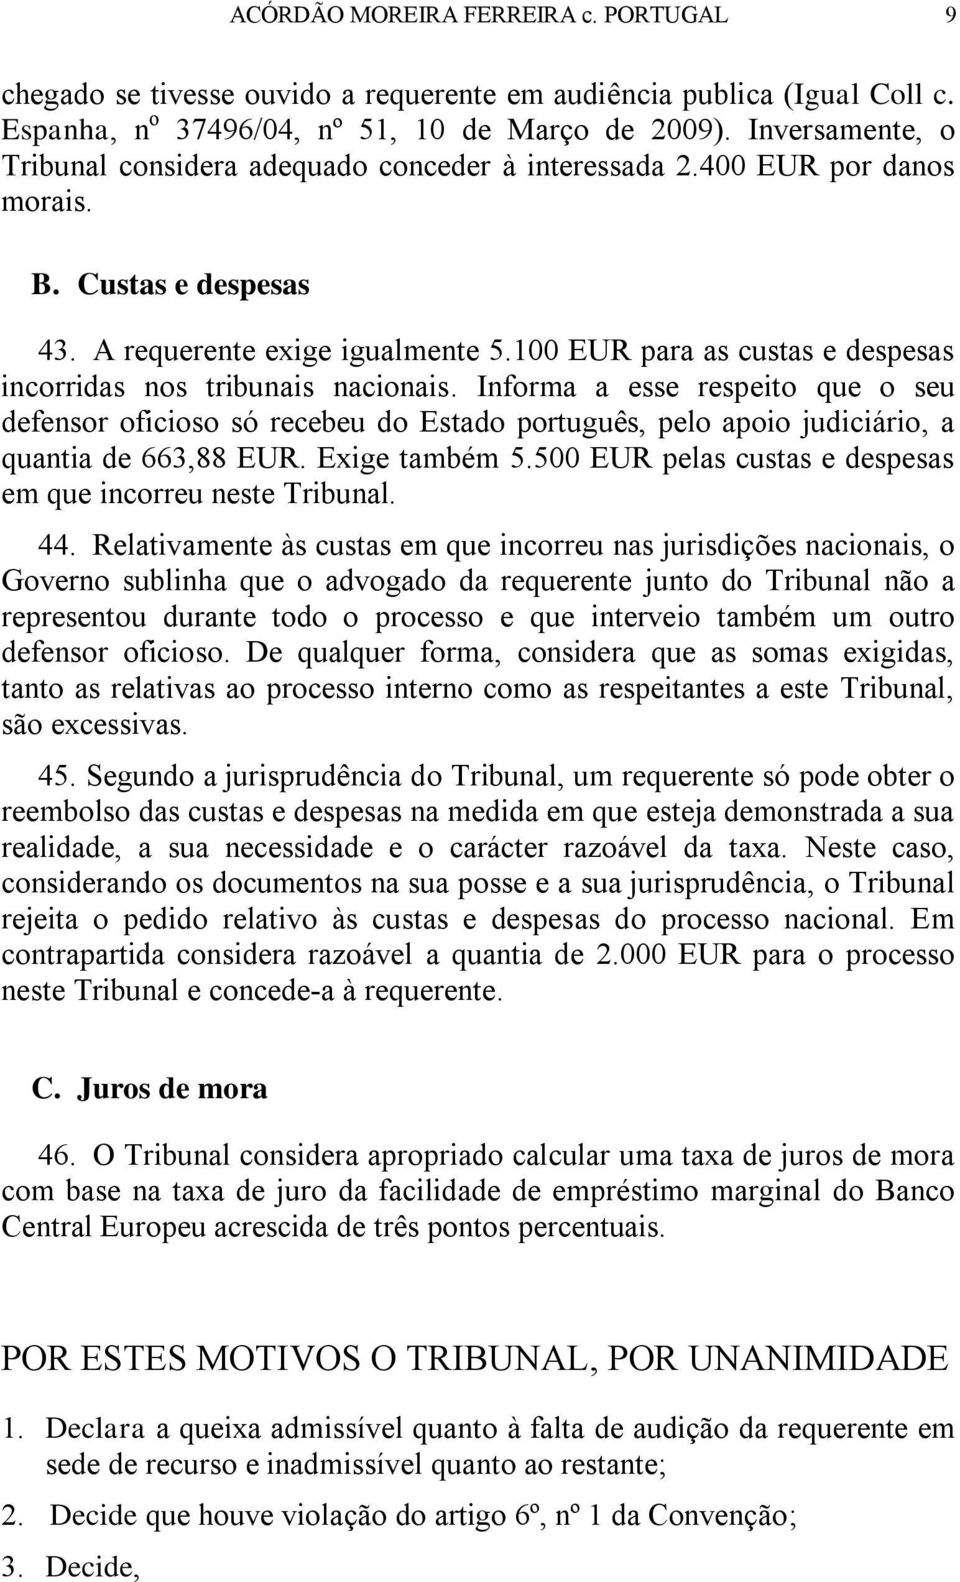 100 EUR para as custas e despesas incorridas nos tribunais nacionais.